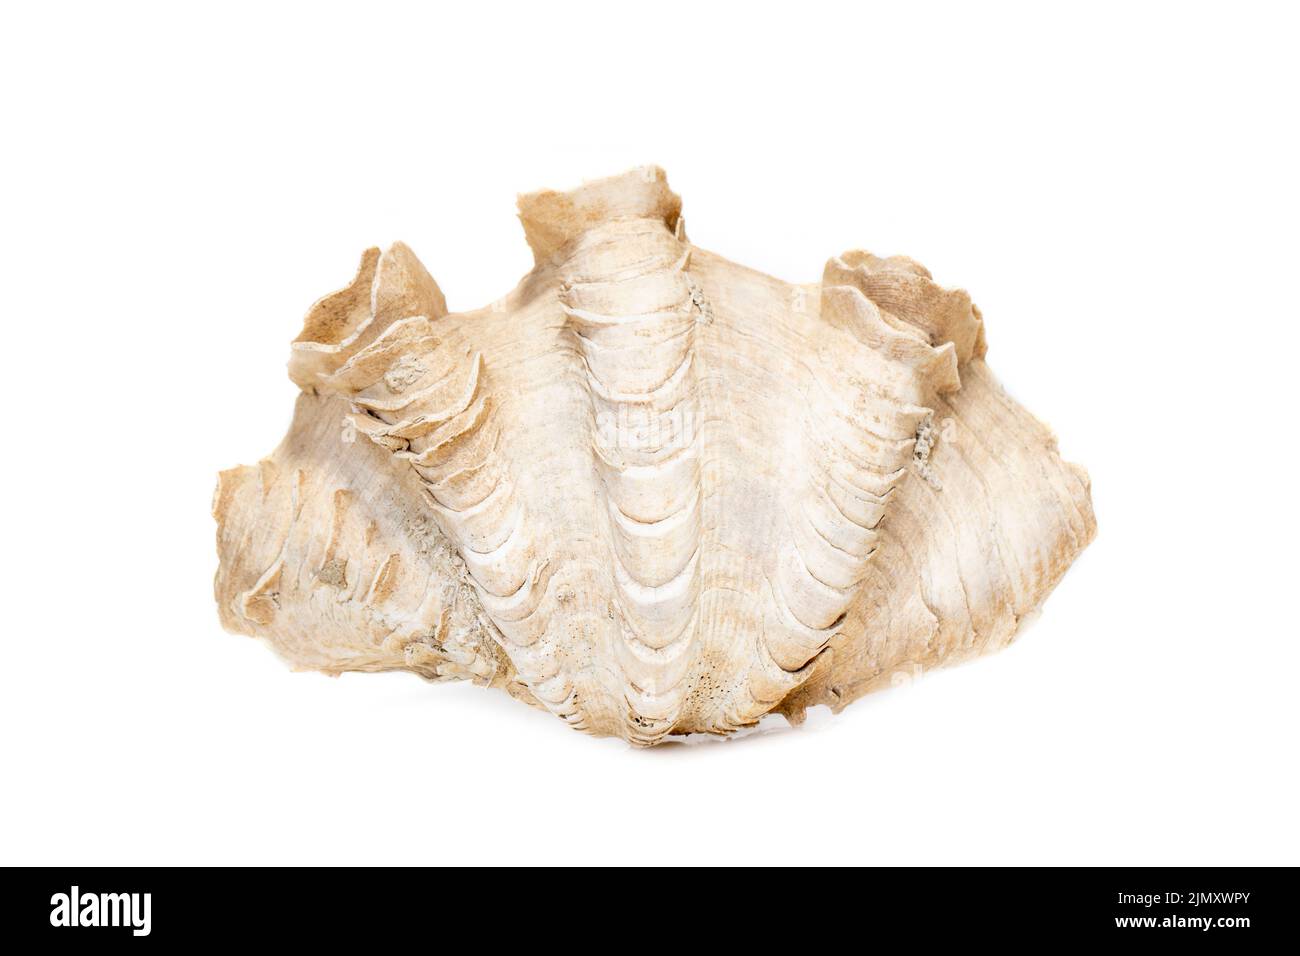 Abbildung der Krokus-Riesenmuschel (Tridacna crocea) auf weißem Hintergrund. Muscheln. Unterwassertiere. Stockfoto